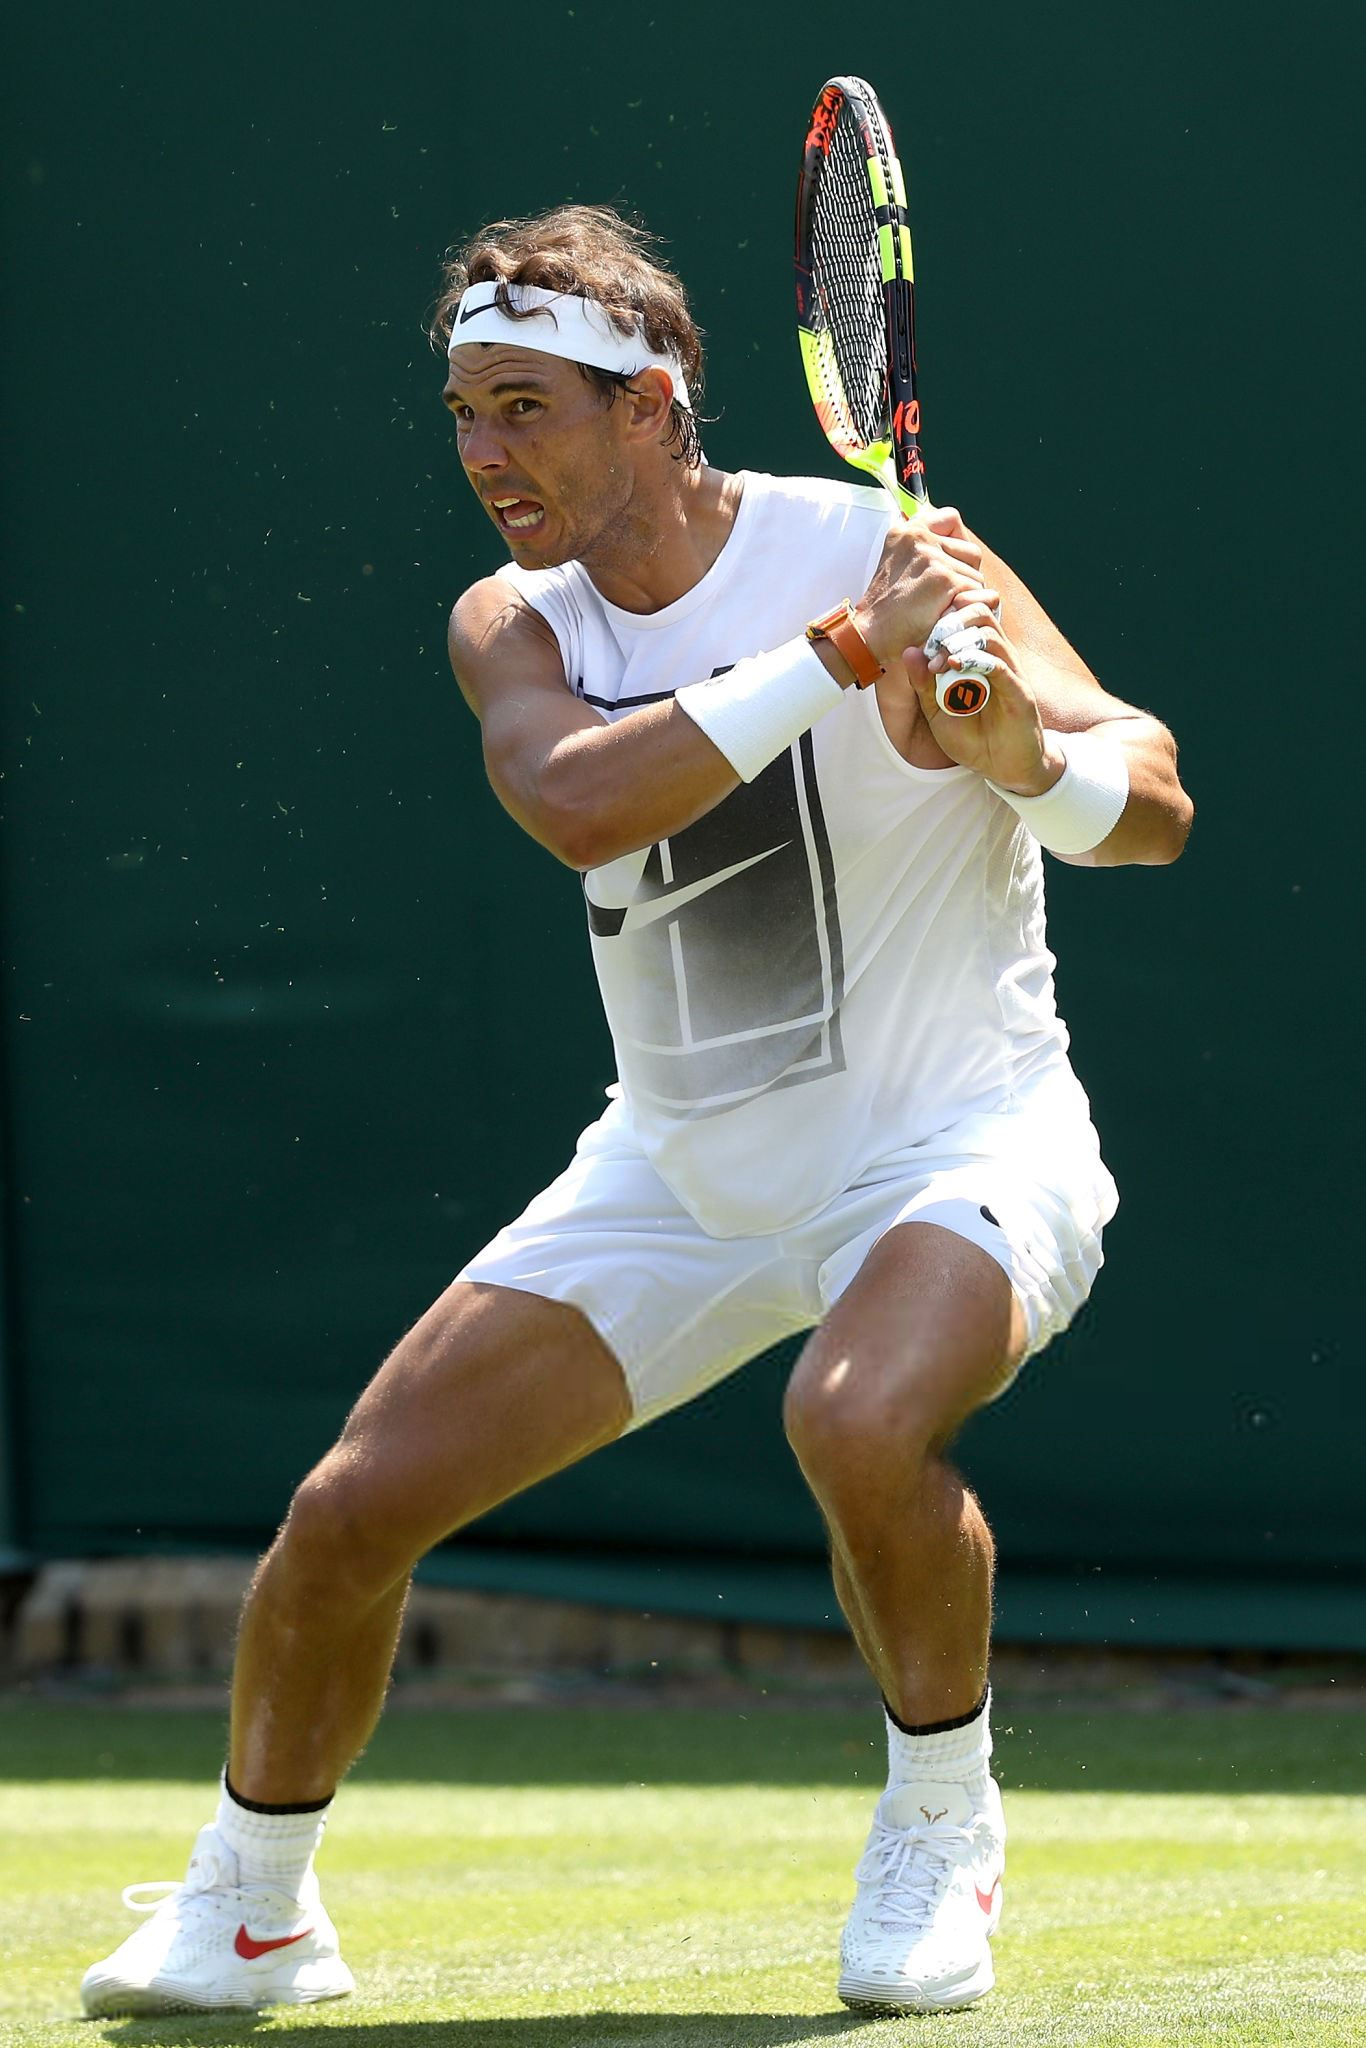 Wimbledon 2018: Thursday practice photos – Rafael Nadal Fans1366 x 2048